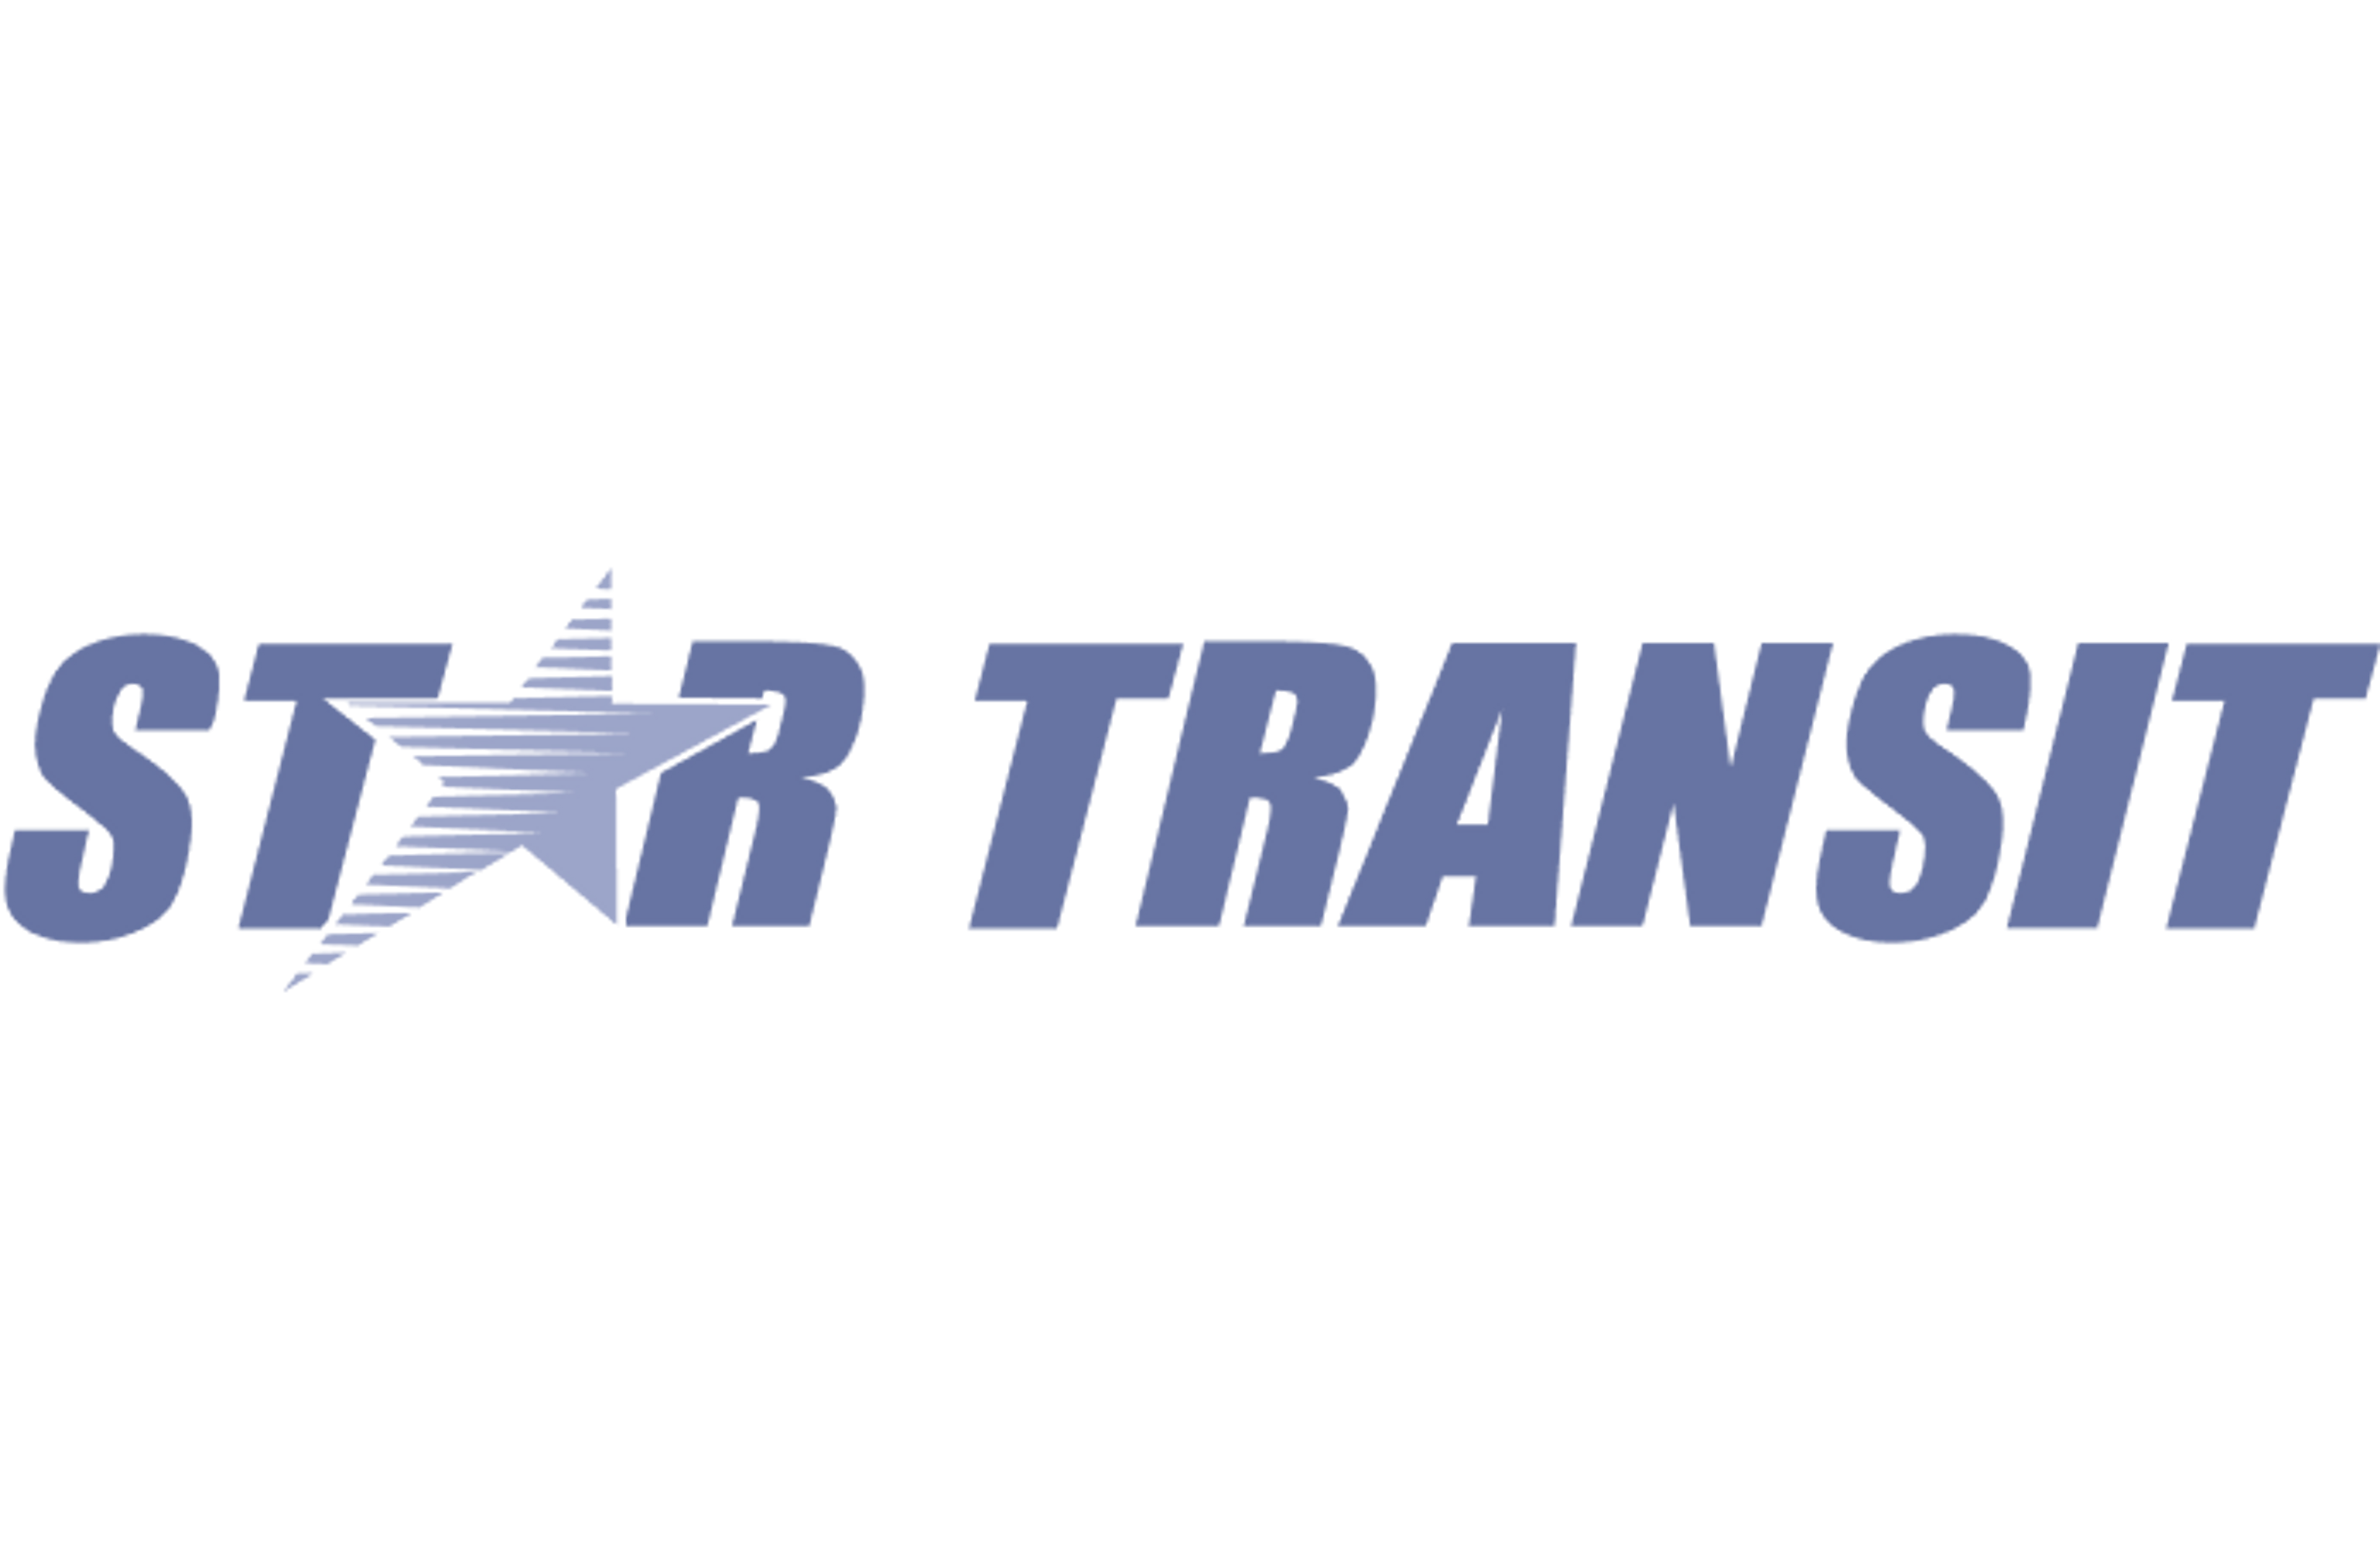 Star Transit logo